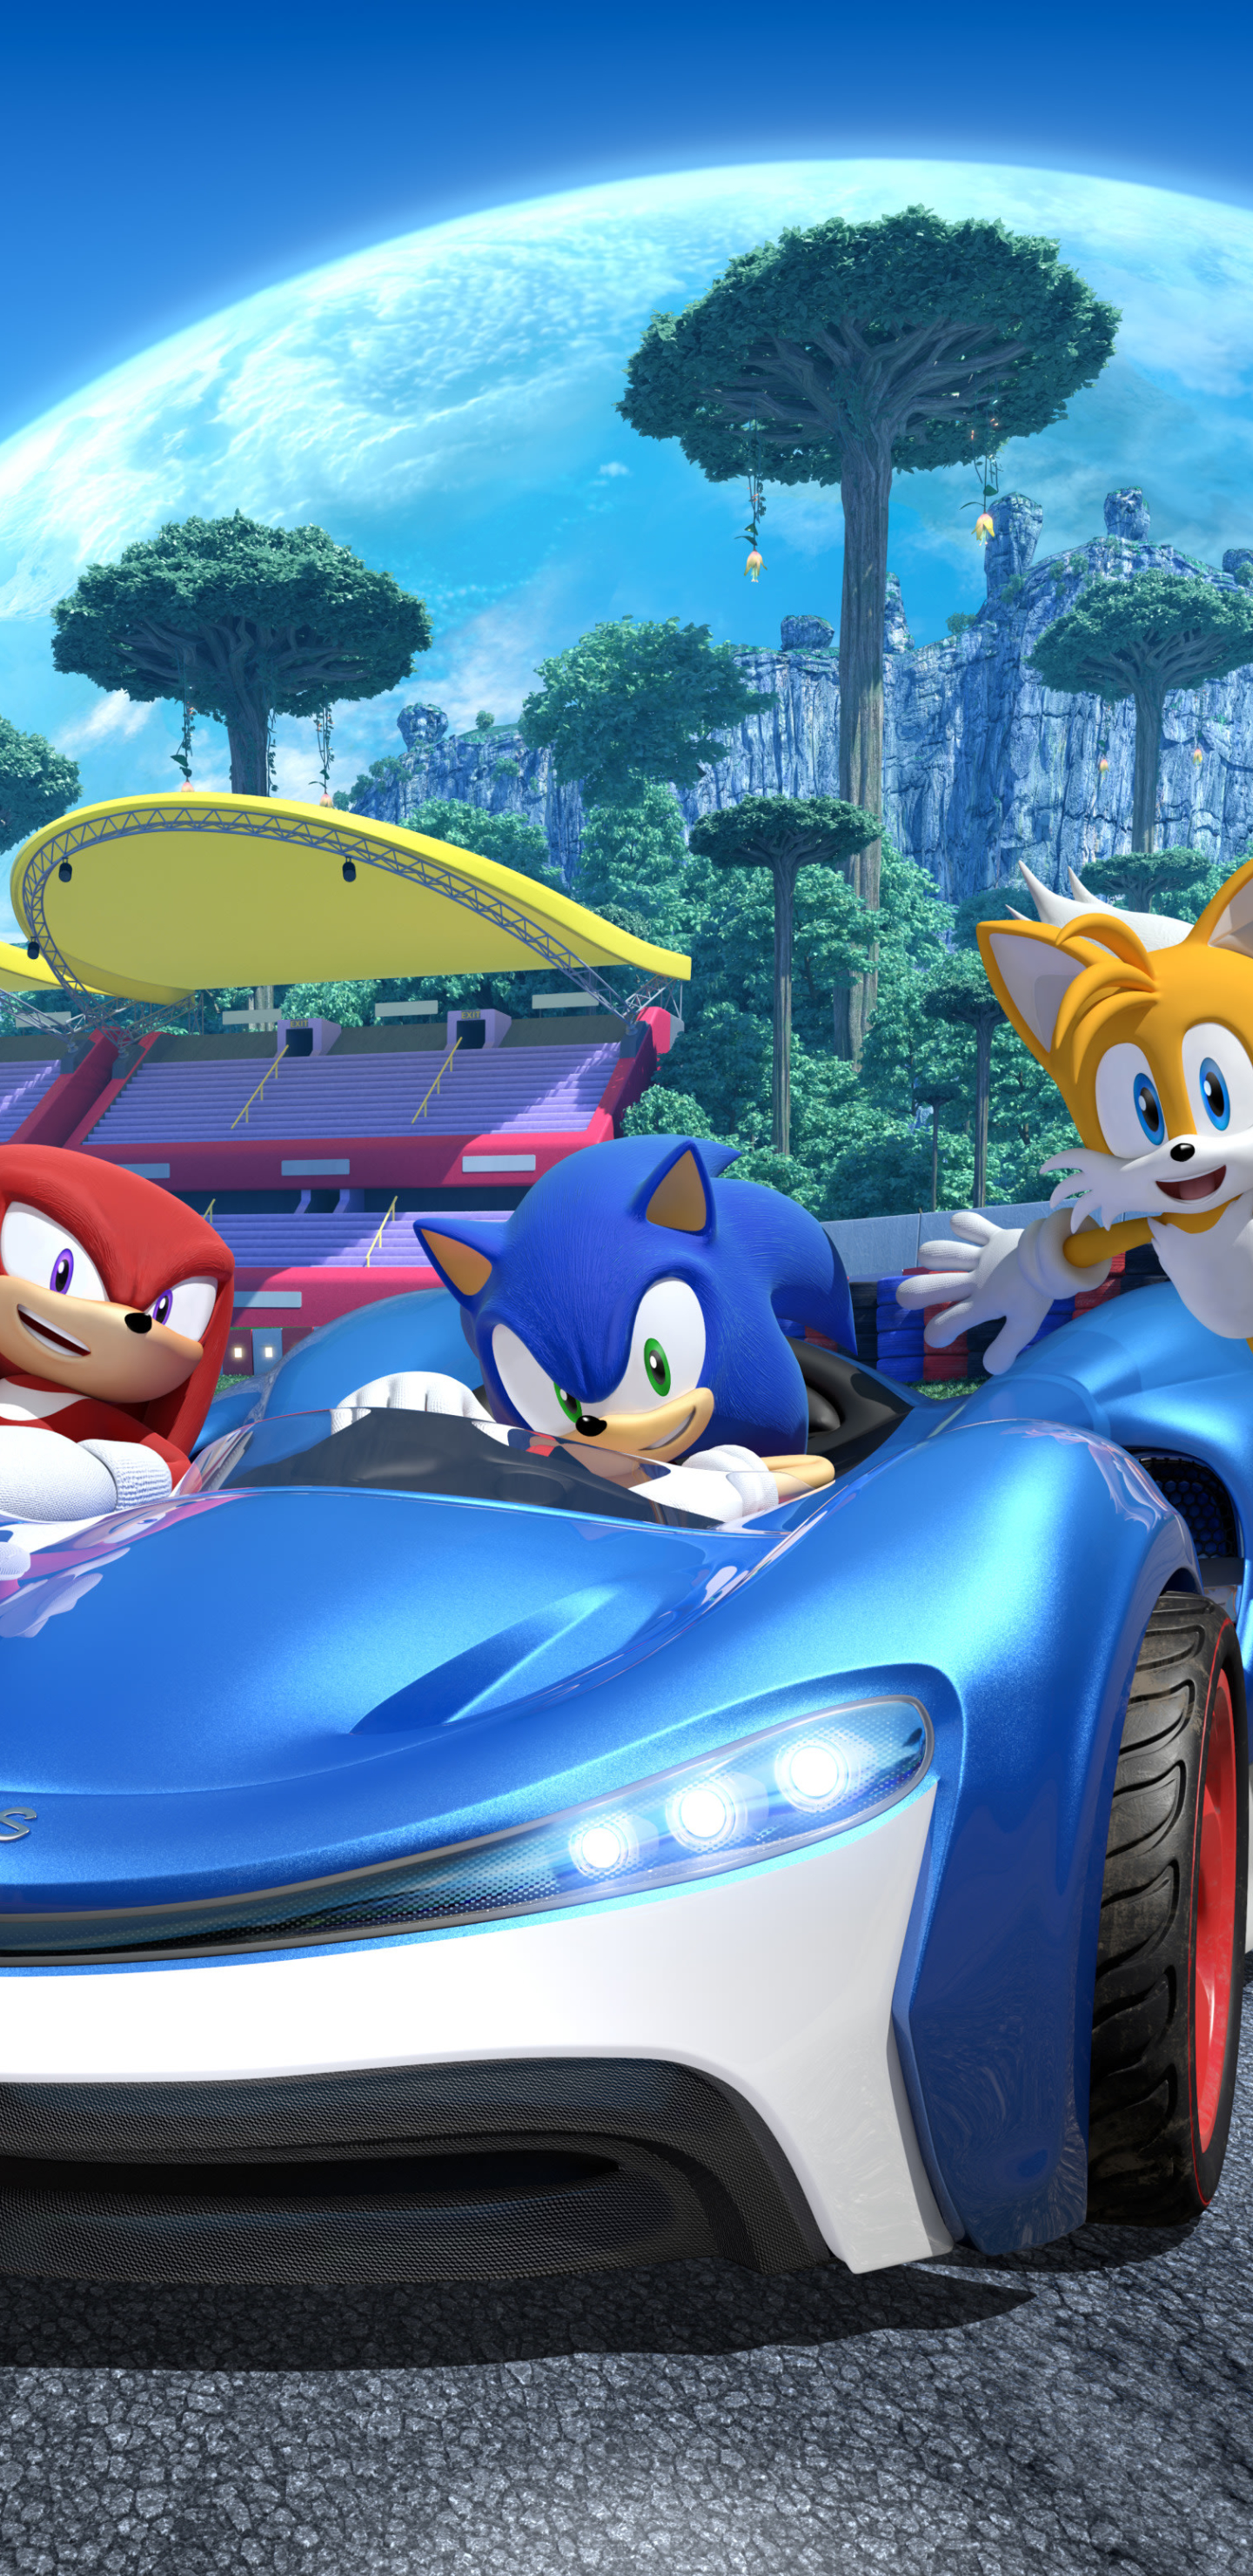 Descarga gratuita de fondo de pantalla para móvil de Videojuego, Sonic El Erizo, Knuckles El Equidna, Miles 'tails' Prower, Team Sonic Racing.